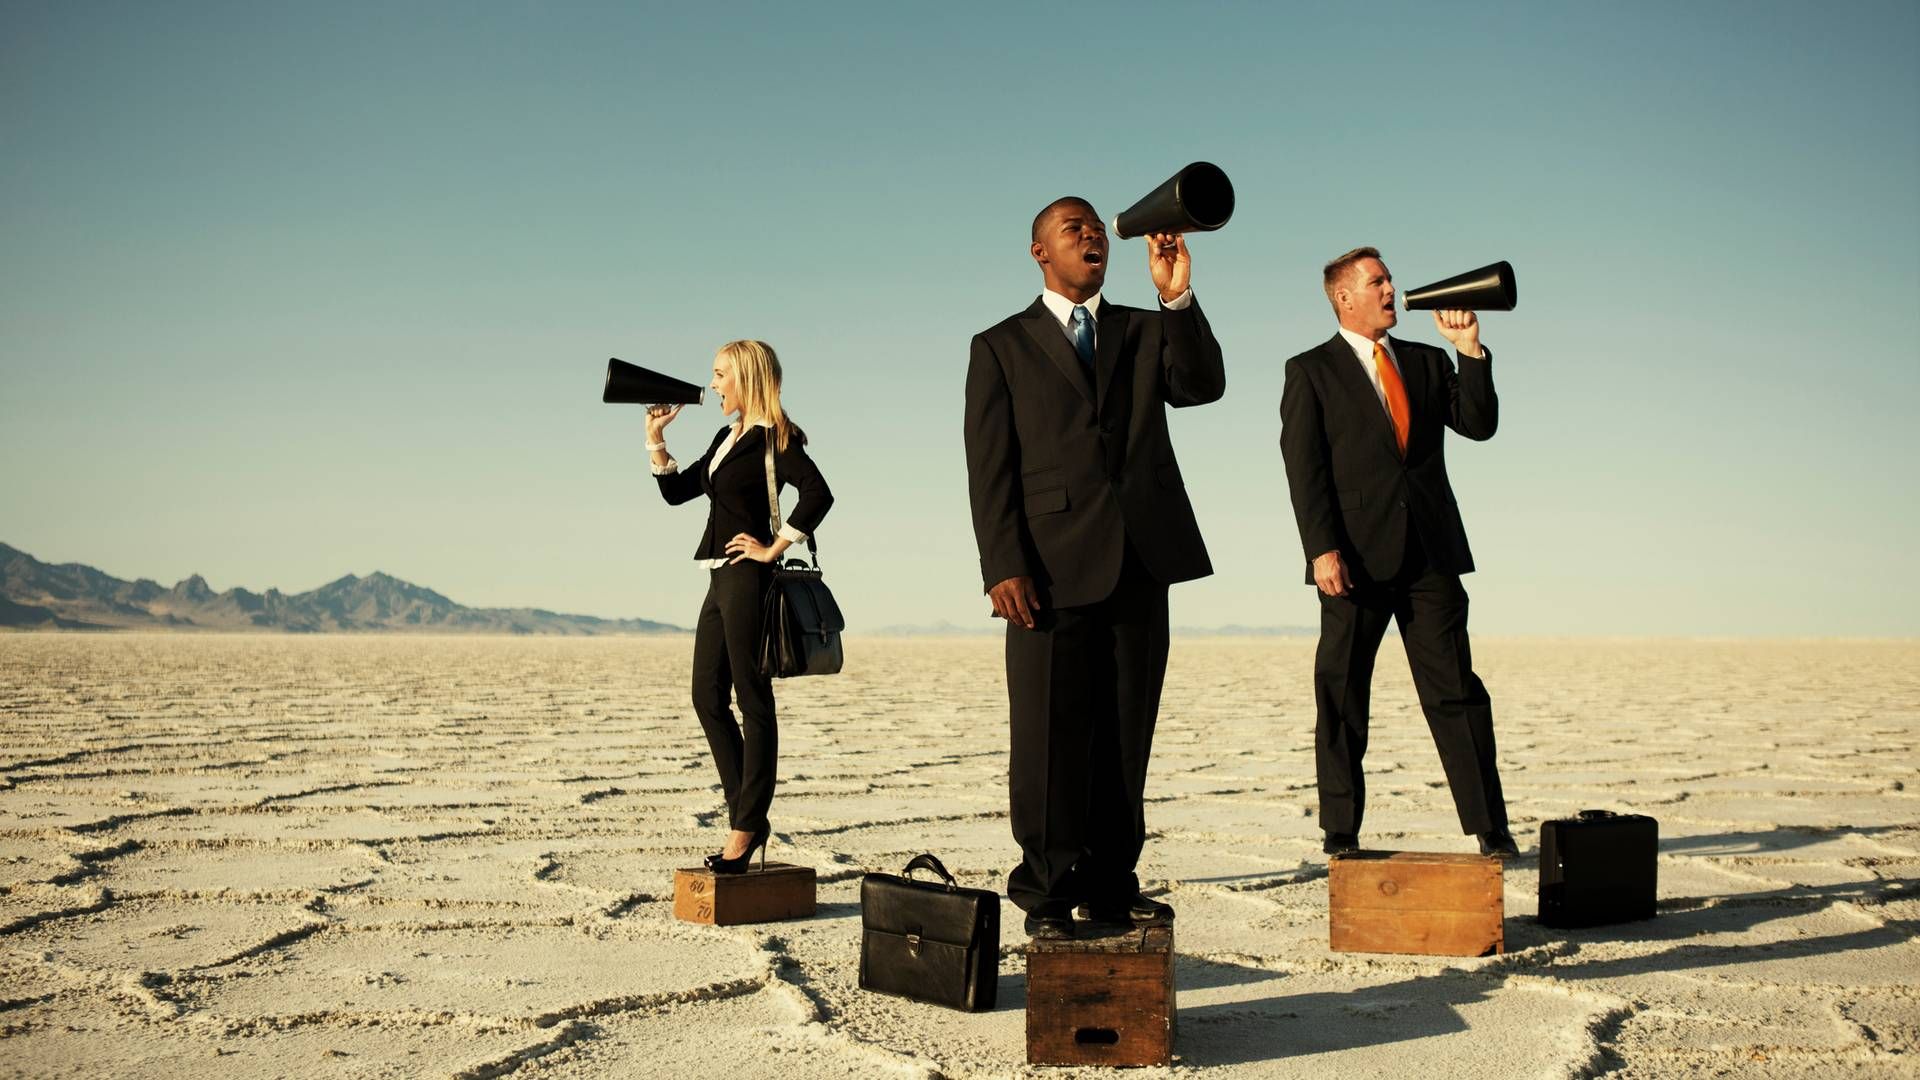 Ejes employer branding af HR eller kommunikation? Eller en tredje afdeling i virksomheden? Det er tilsyneladende uklart. | Foto: Getty Images